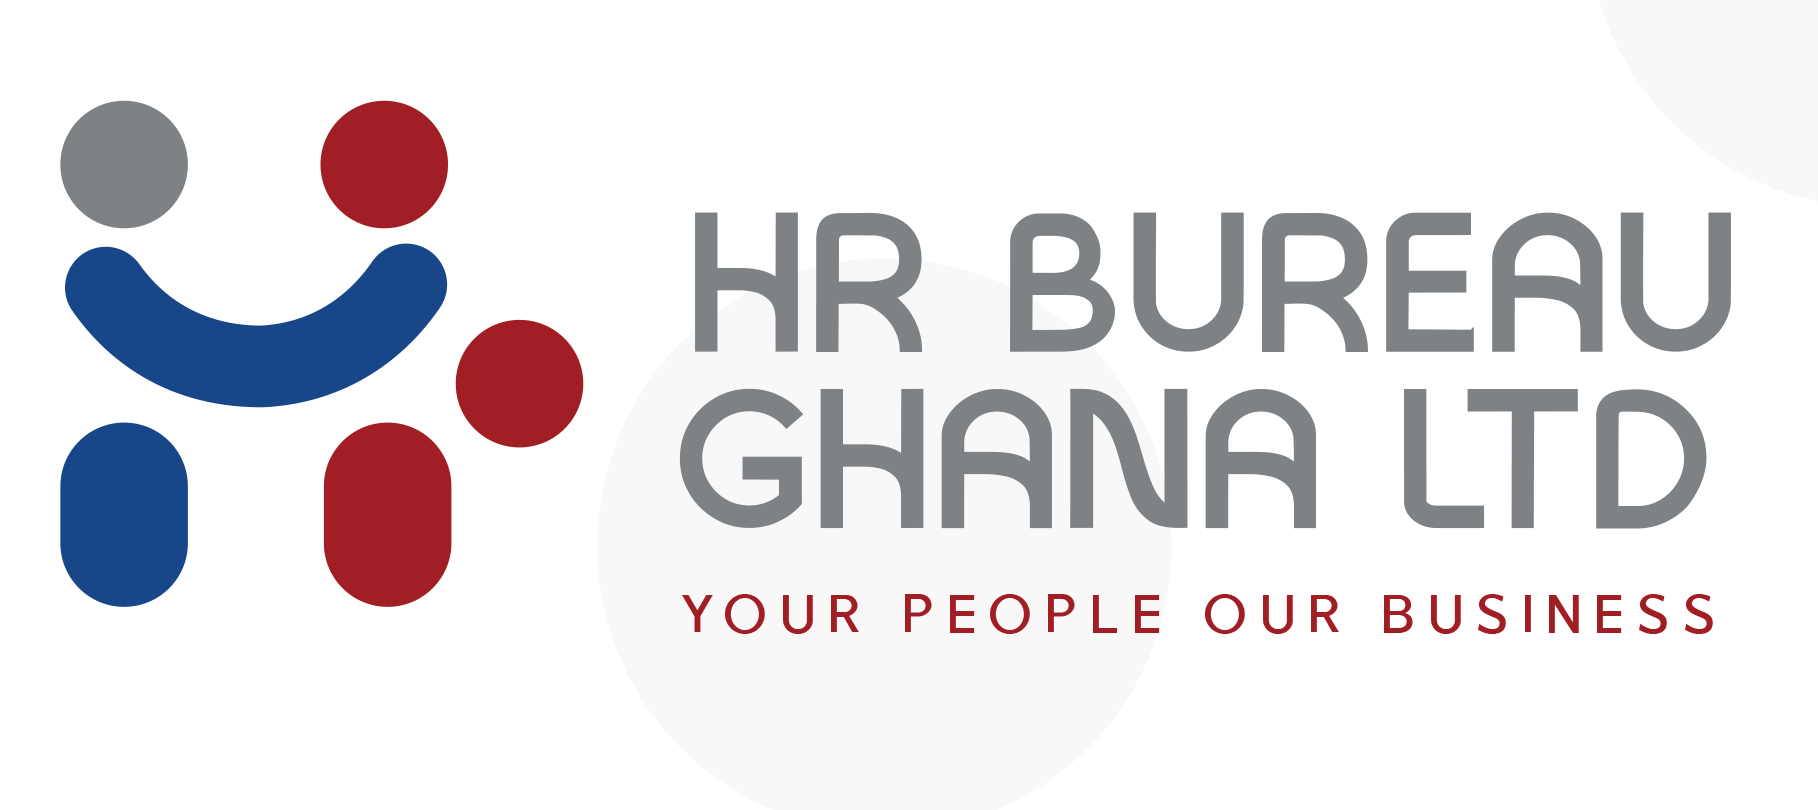 HR Bureau Ghana